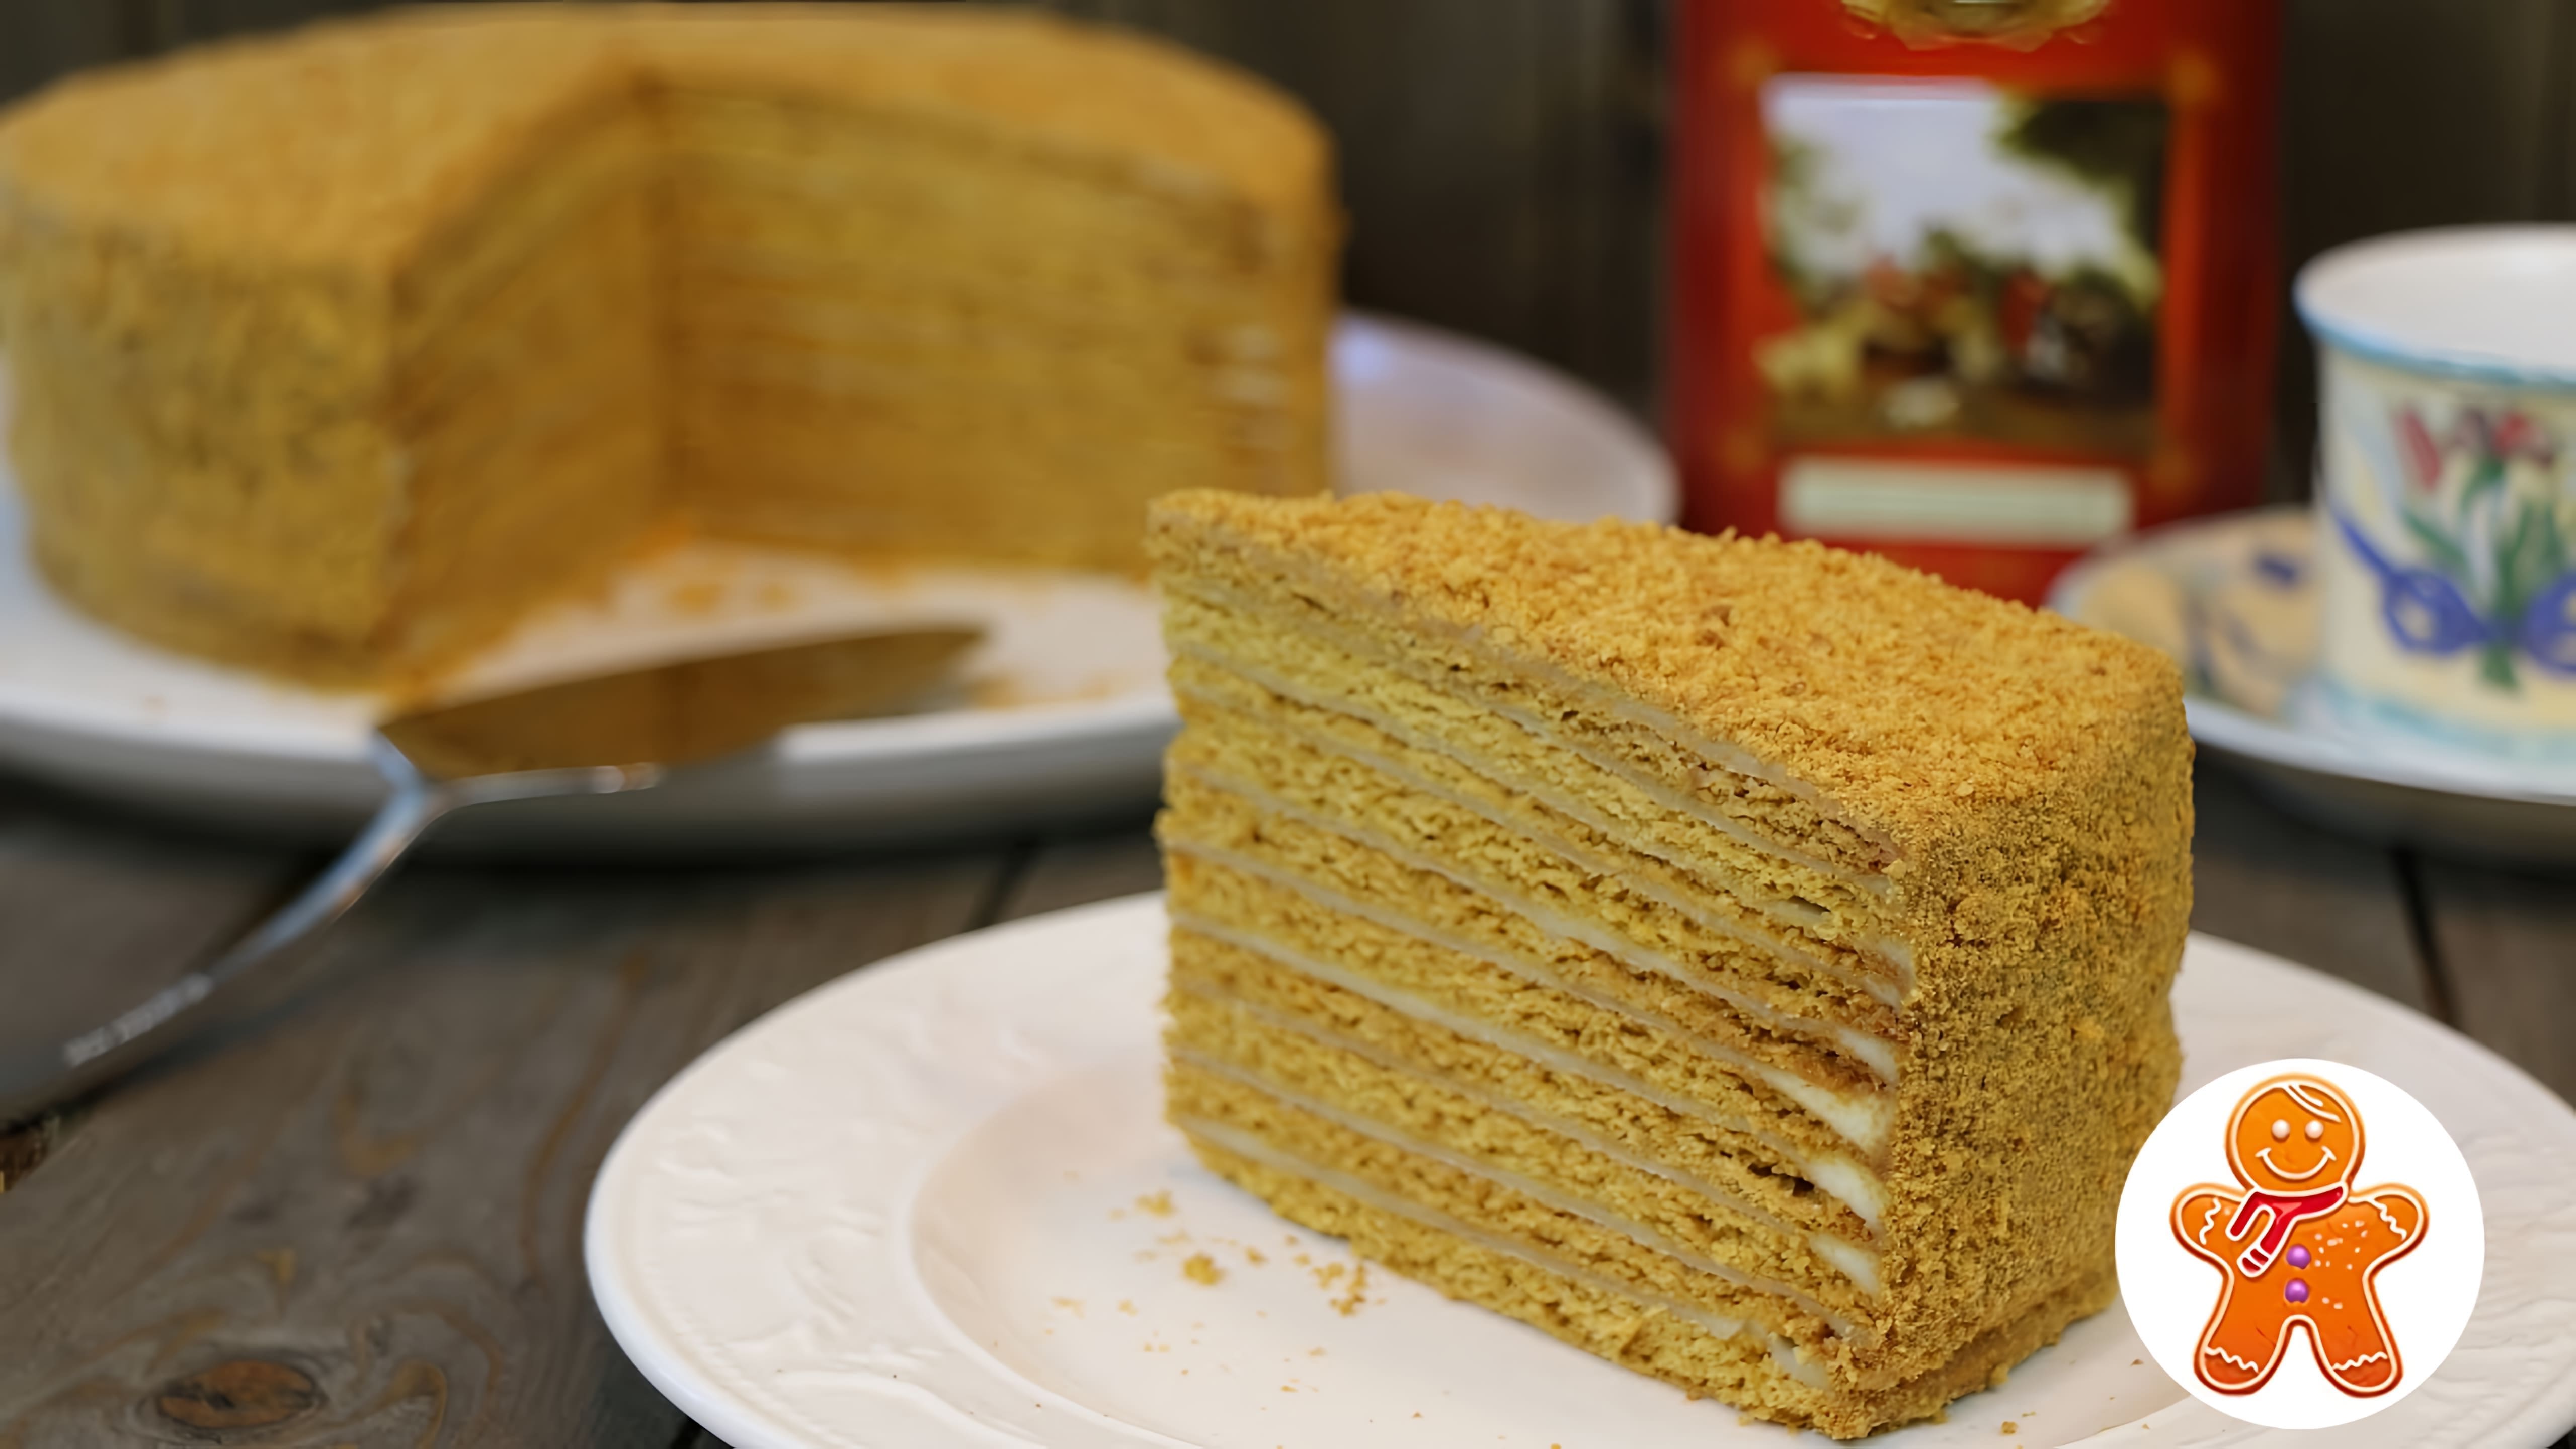 В этом видео демонстрируется процесс приготовления медового торта с нежным кремом на вареной сметане